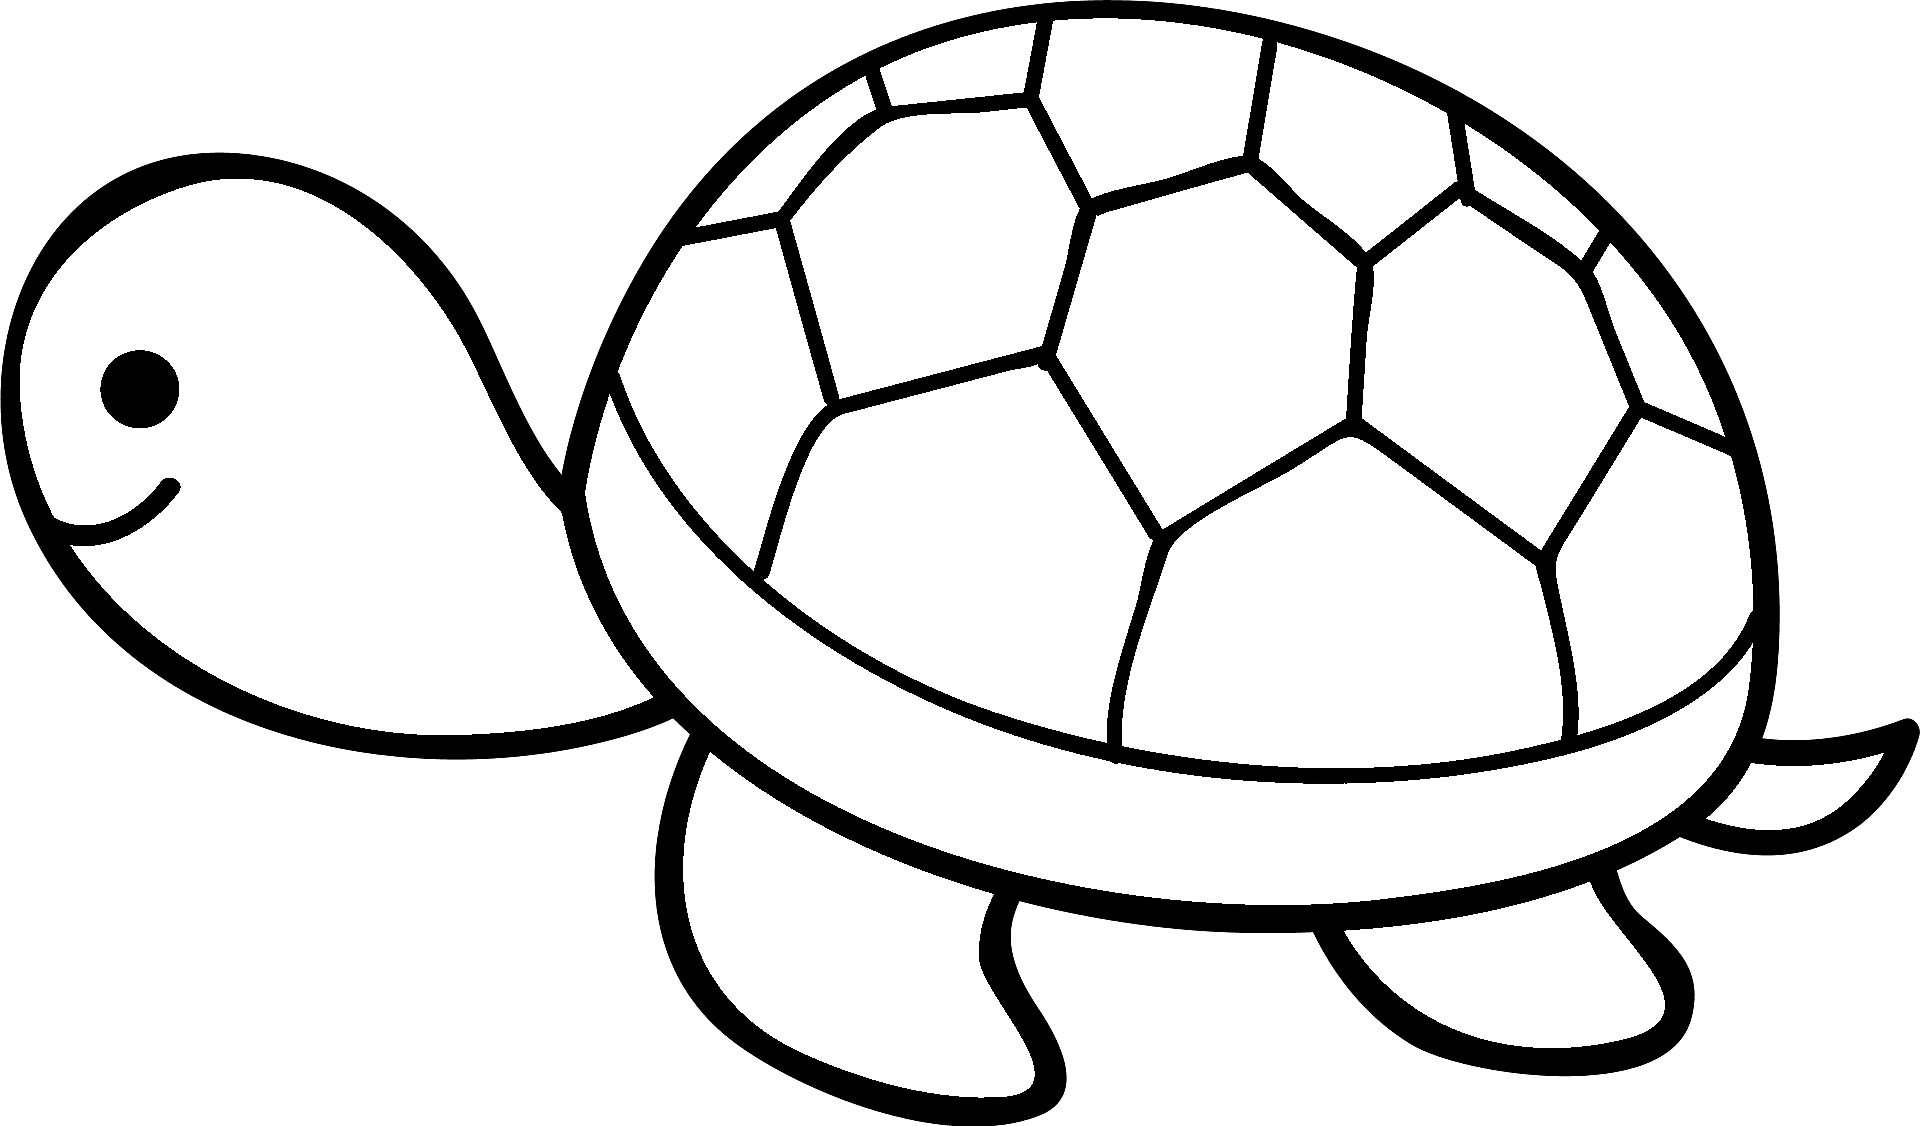 Dibujo para colorear de una tortuga